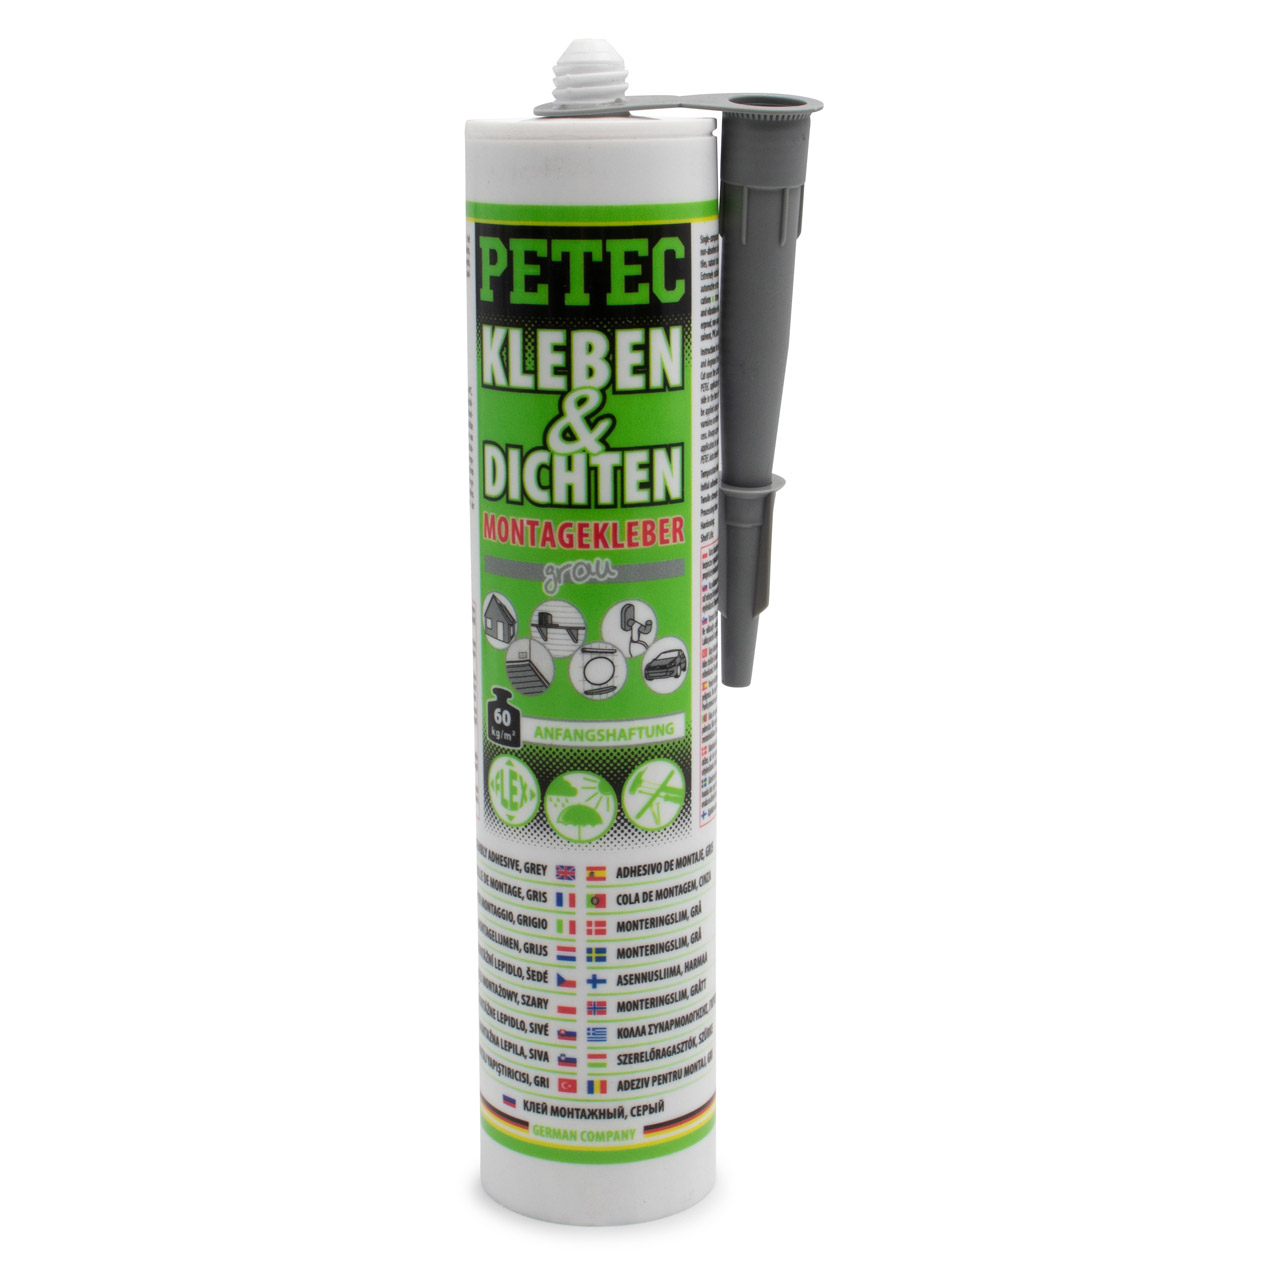 PETEC 94629 Kleben & Dichten Montagekleber Kleber Klebstoff elastisch grau Kartusche 290ml